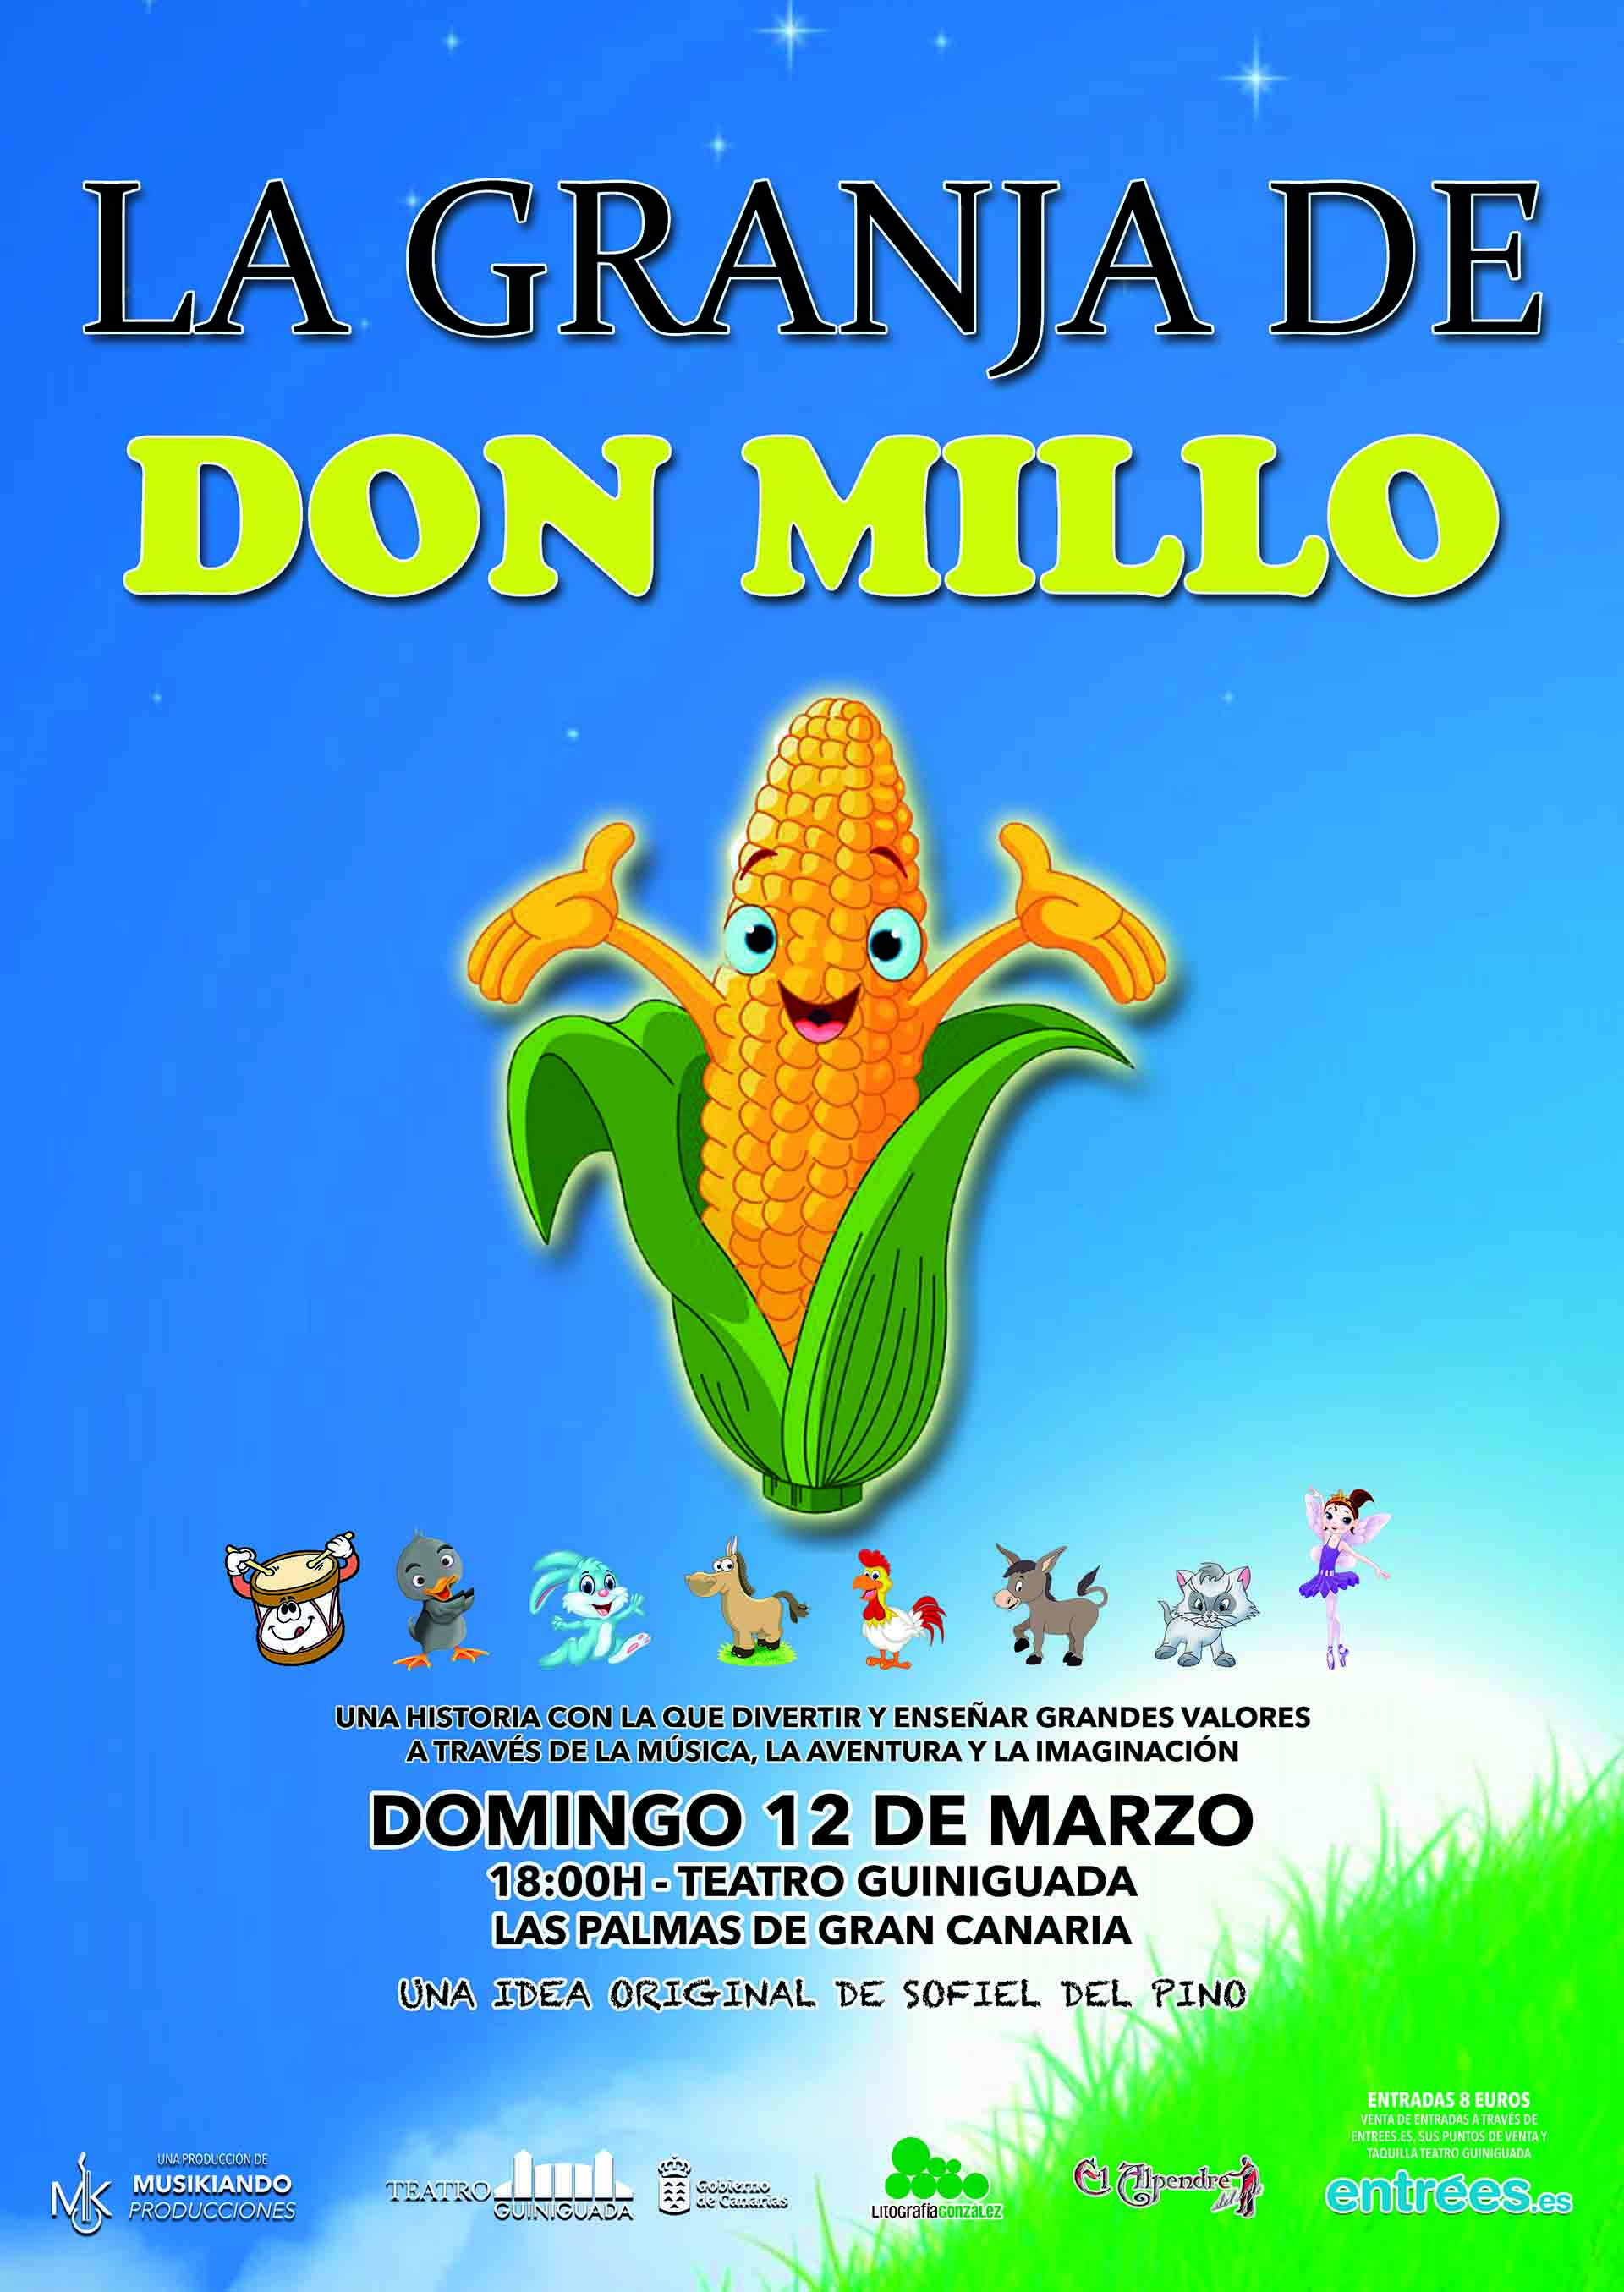 La Granja de Don Millo, próximo Domingo 12 de Marzo, Teatro Guiniguada